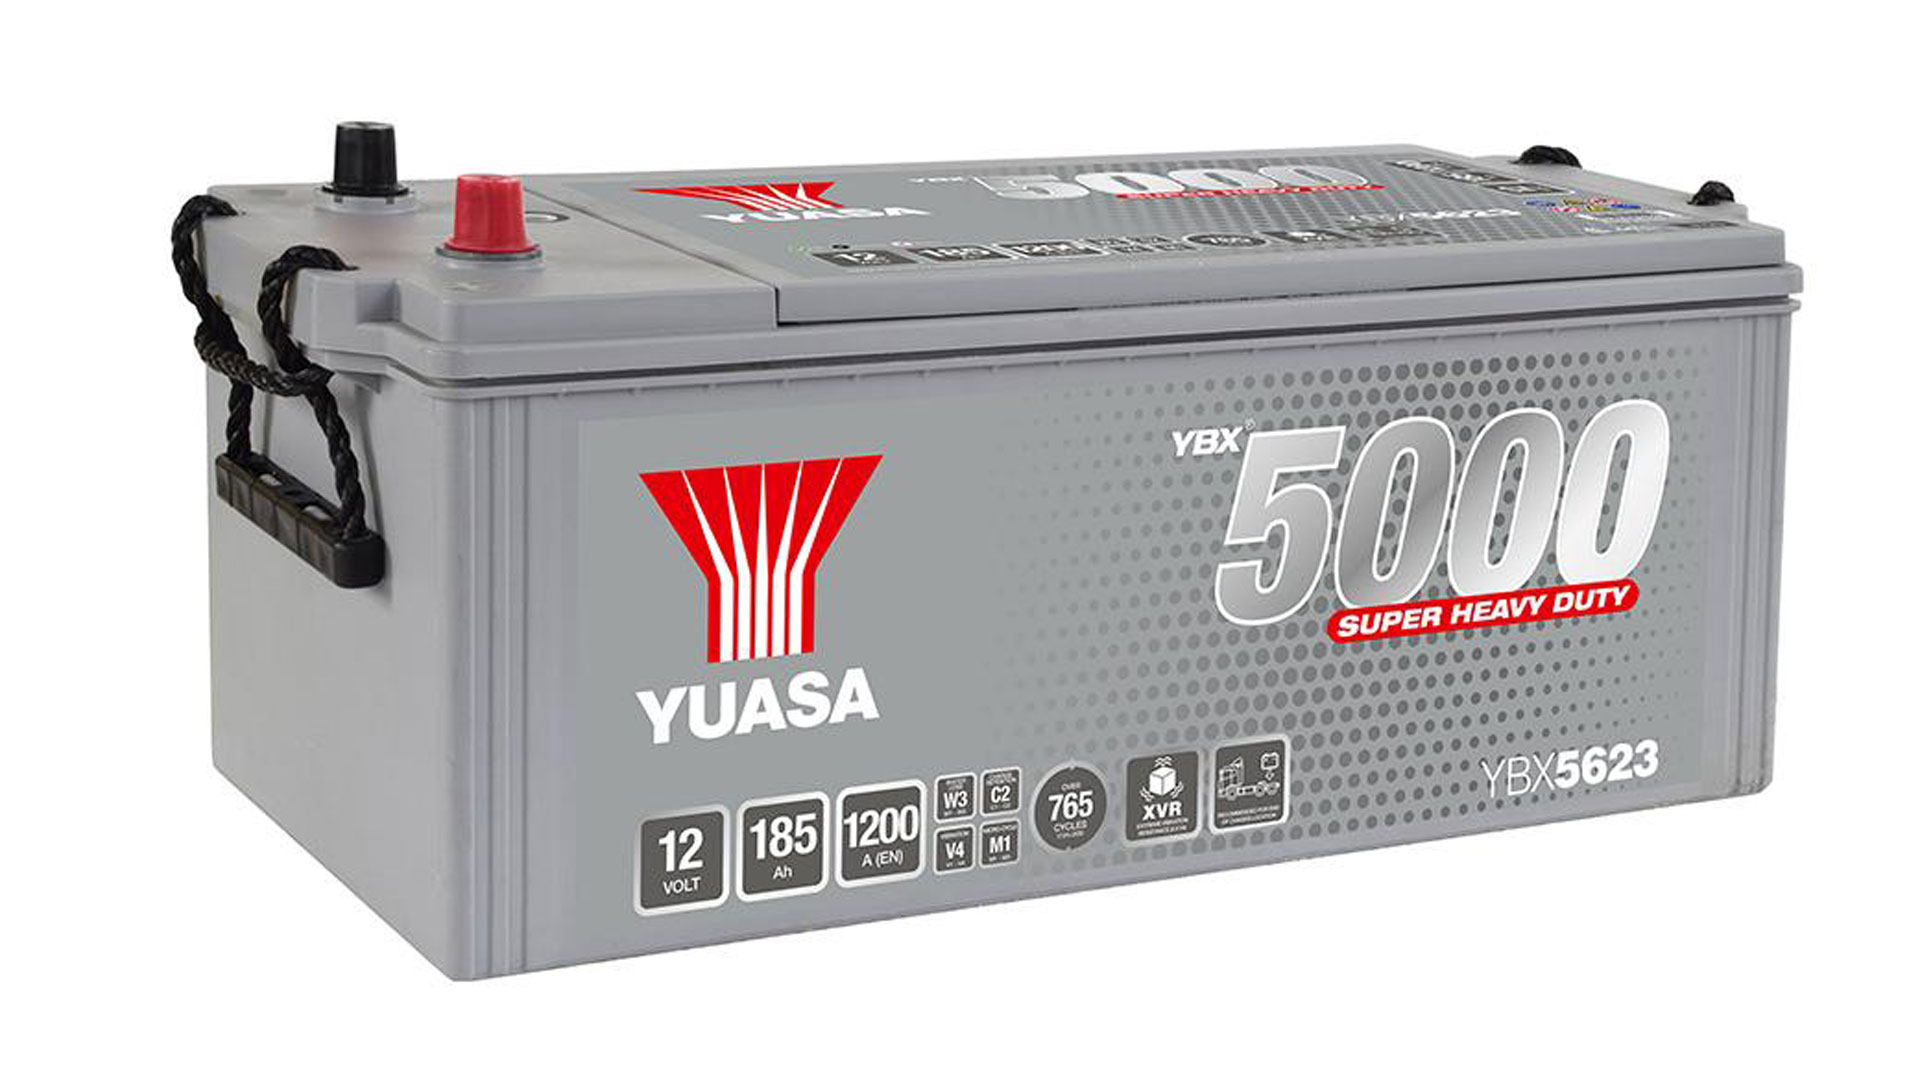  Yuasa YBX5623 12V 185Ah 1200A Super Heavy Duty SMF 